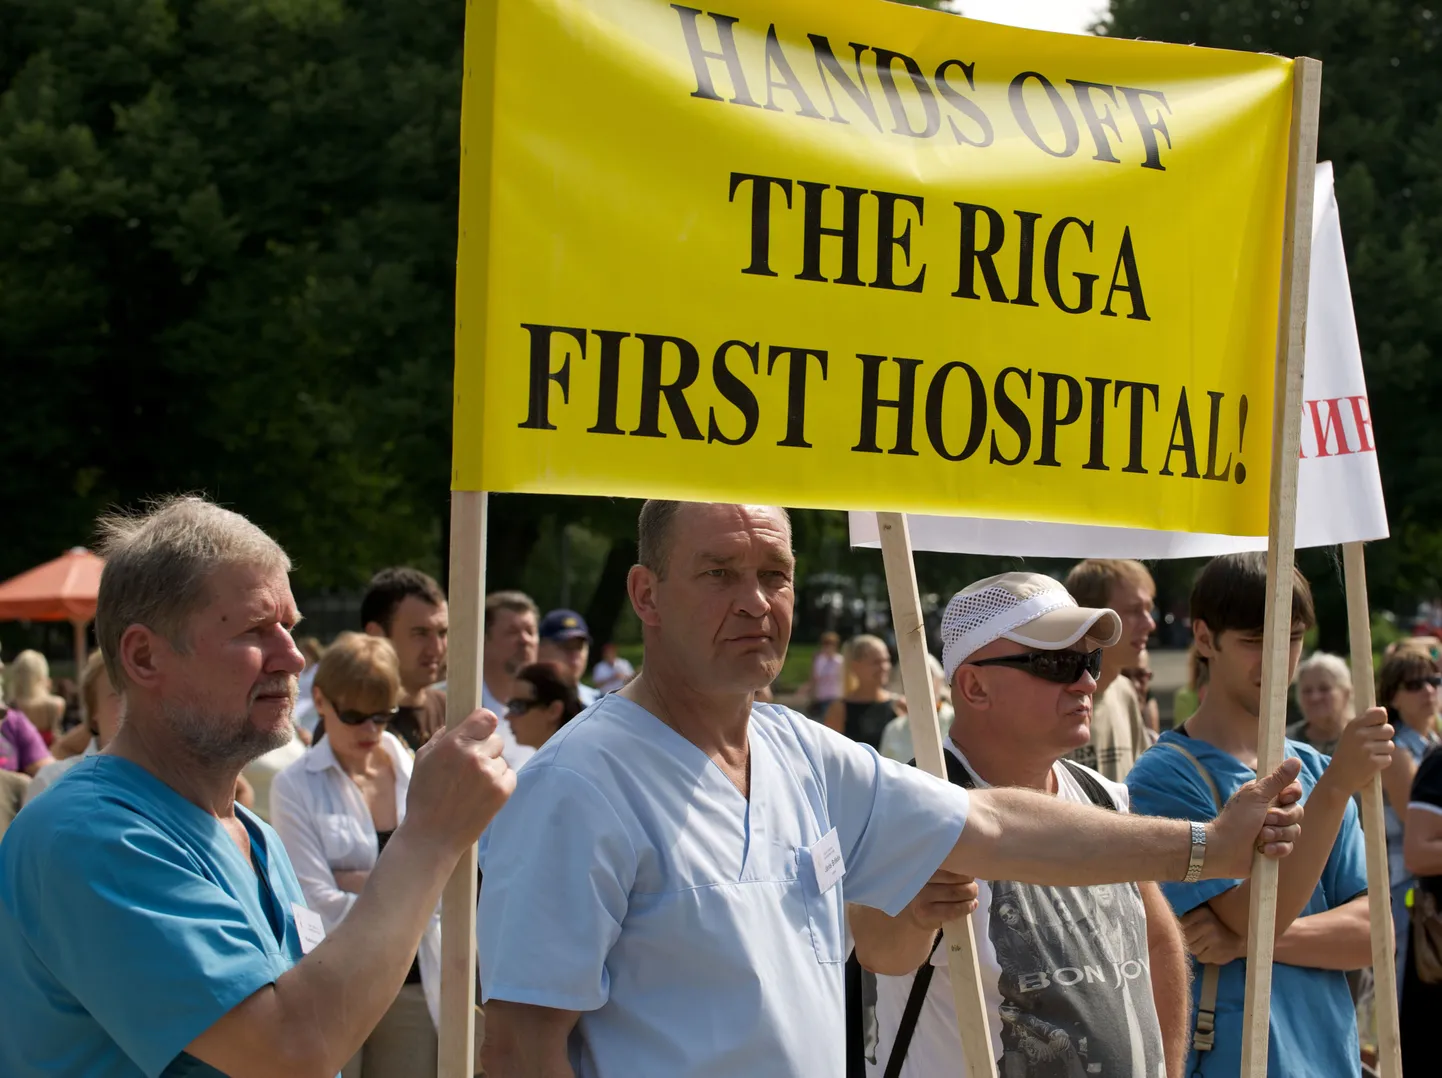 1. augustil toimus Riias meeleavaldus linna 1. haigla sulgemise vastu.